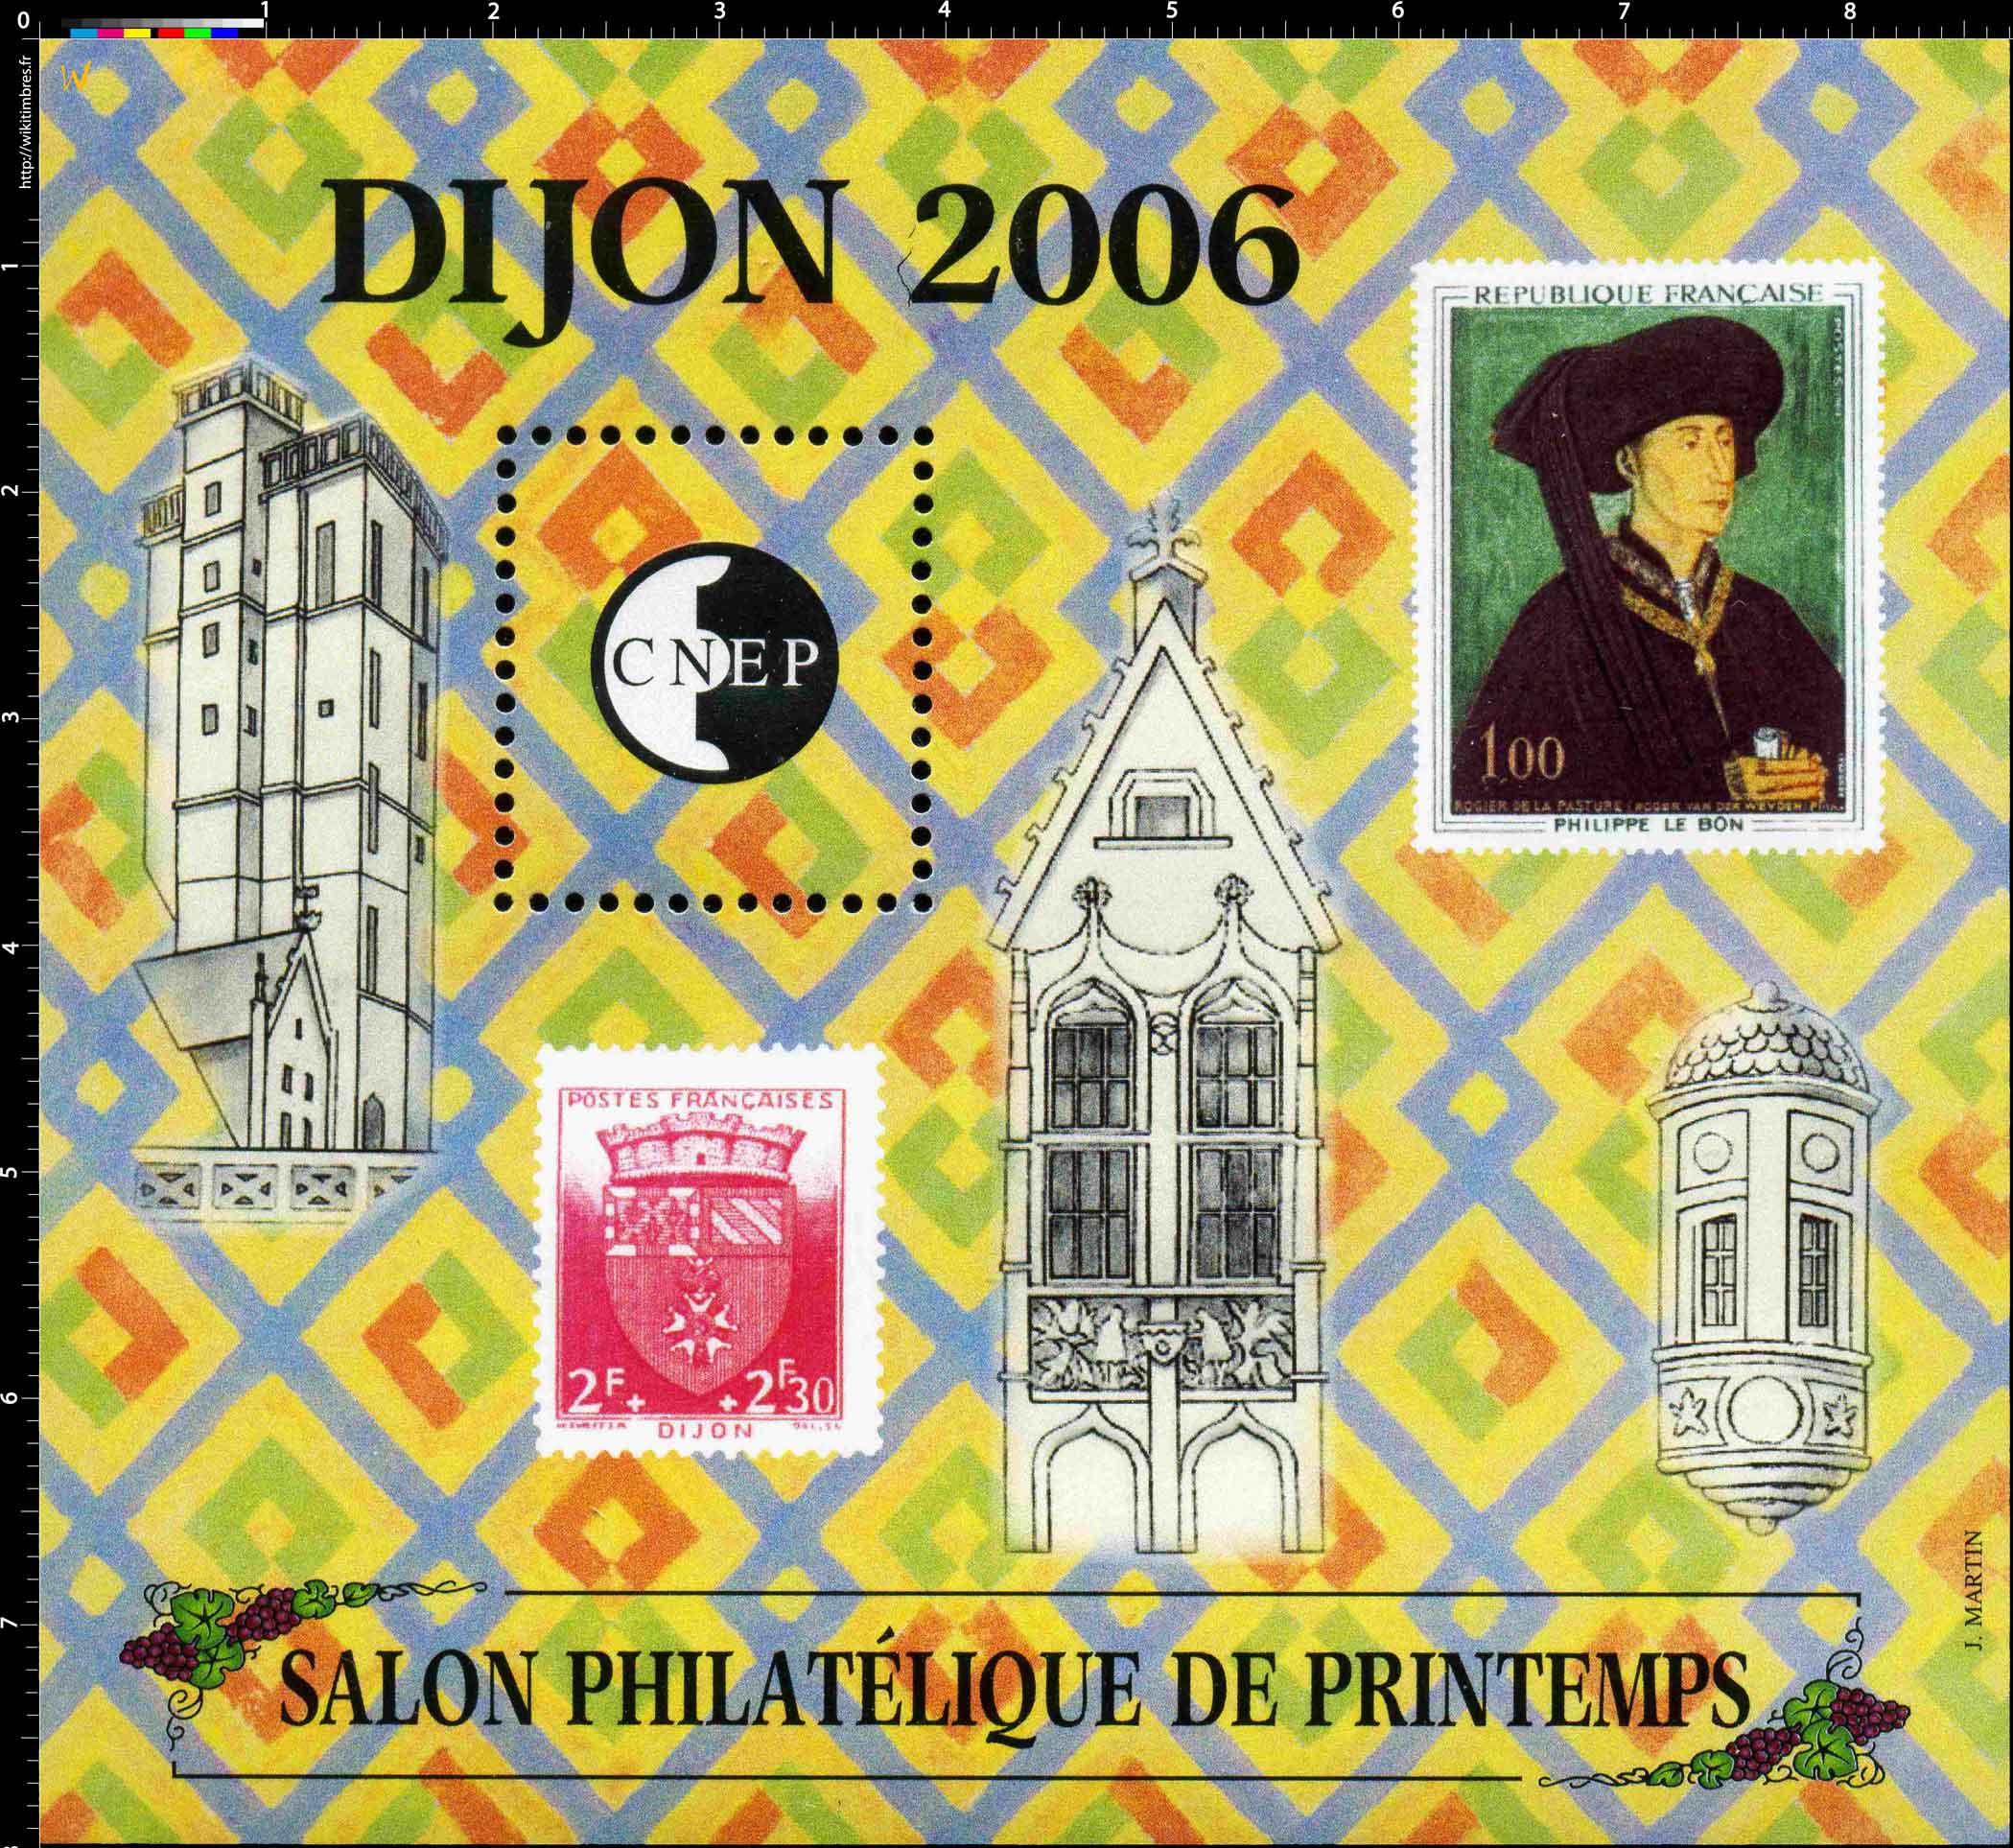 2006 Salon philatélique de printemps Dijon CNEP